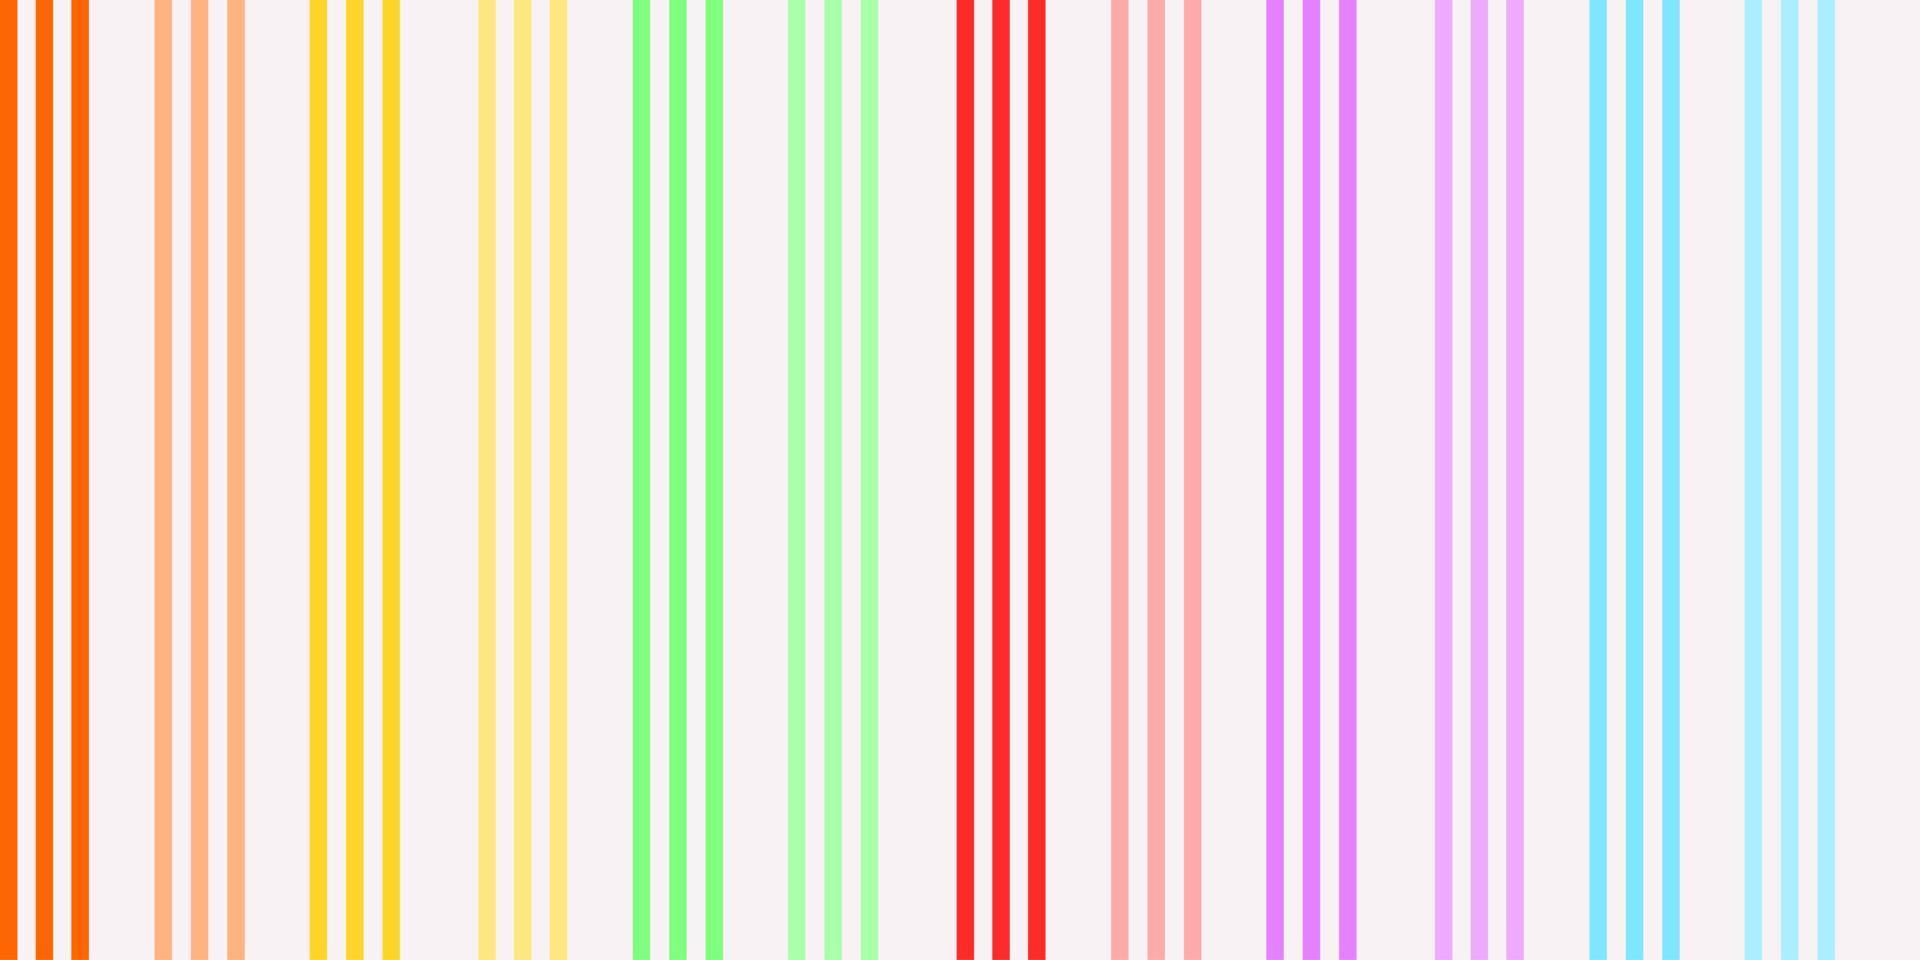 Regenbogenfarbe von vertikalen Streifen, abstrakter Hintergrund. nahtloses Musterdesign. Papier, Stoff, Stoff, Kleid, Serviette, Decke, Bettdruck, Geschenk, Verpackung. egal, alternativ, lgbtq, kindisch, spielplatz. vektor